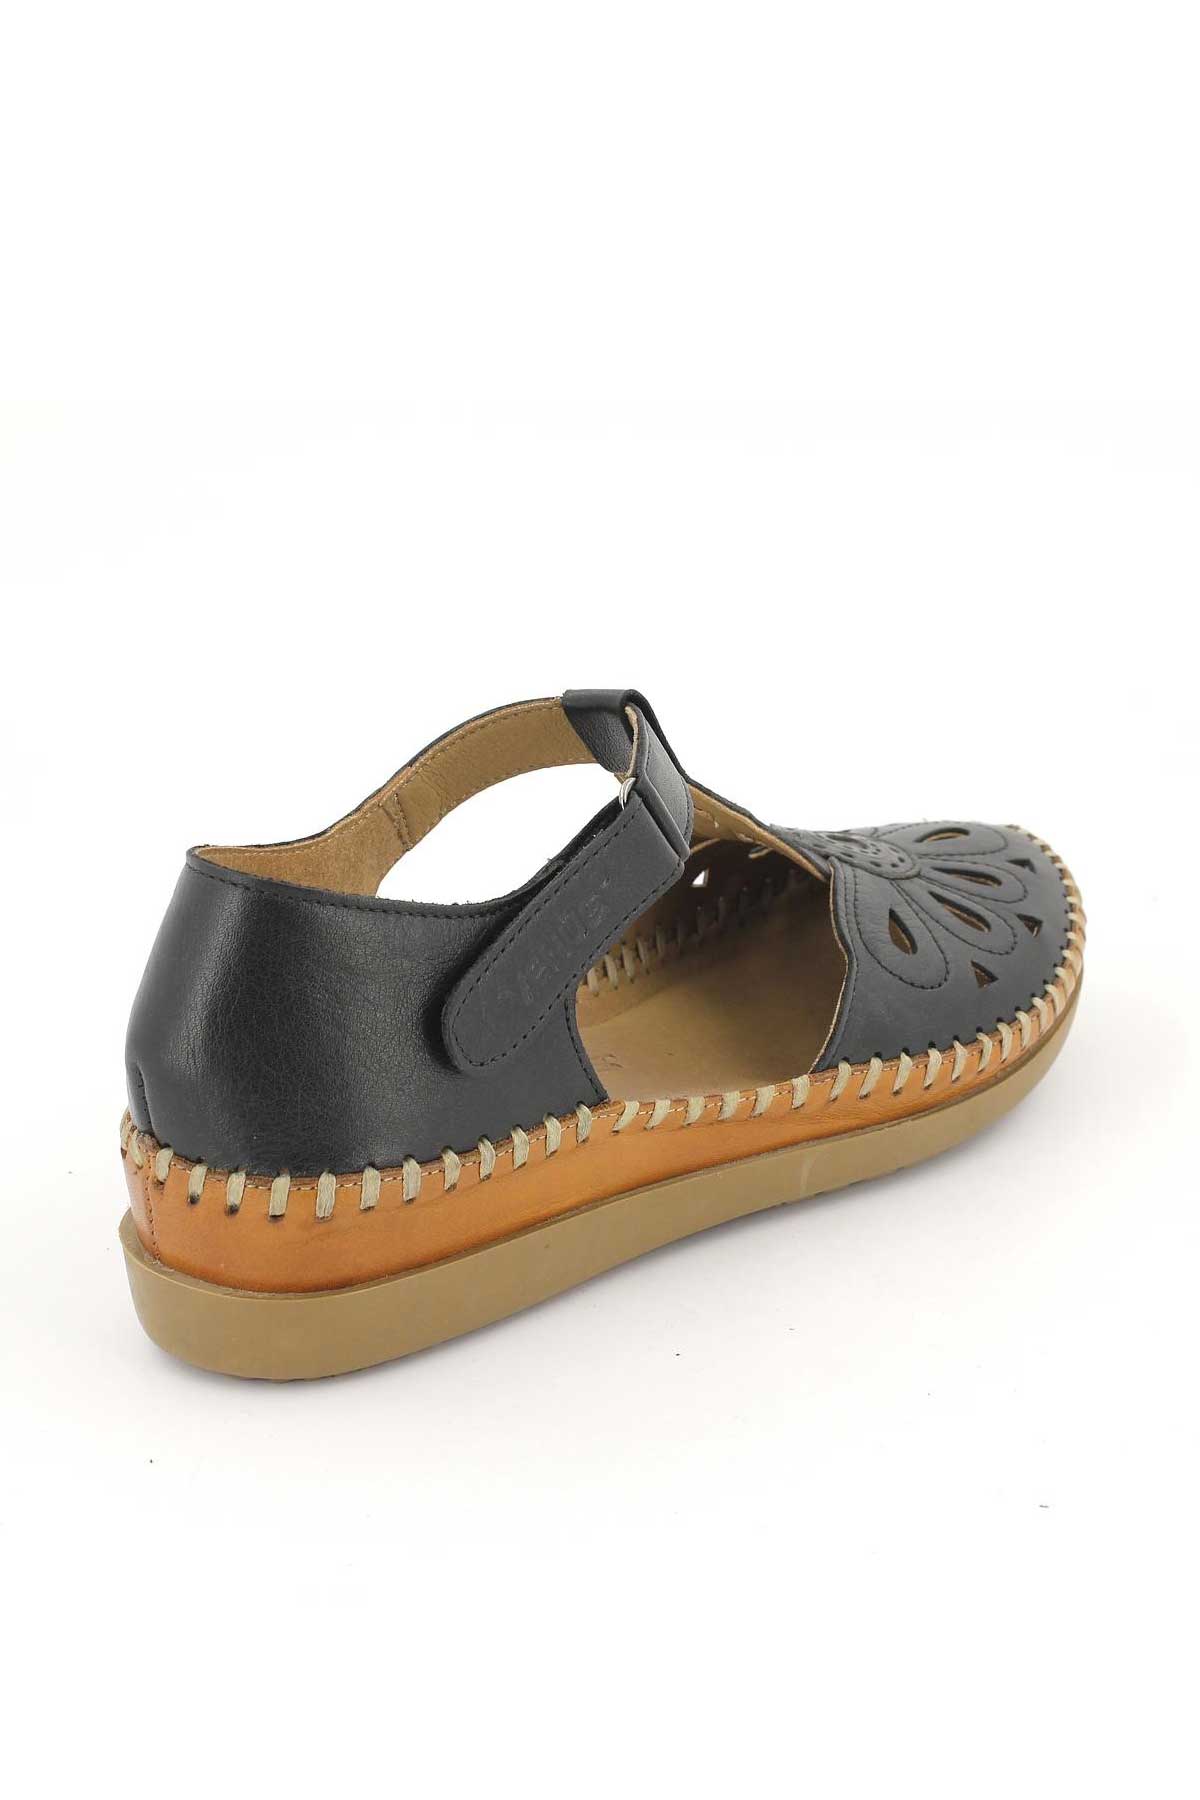 Kadın Comfort Sandalet Siyah 18793505